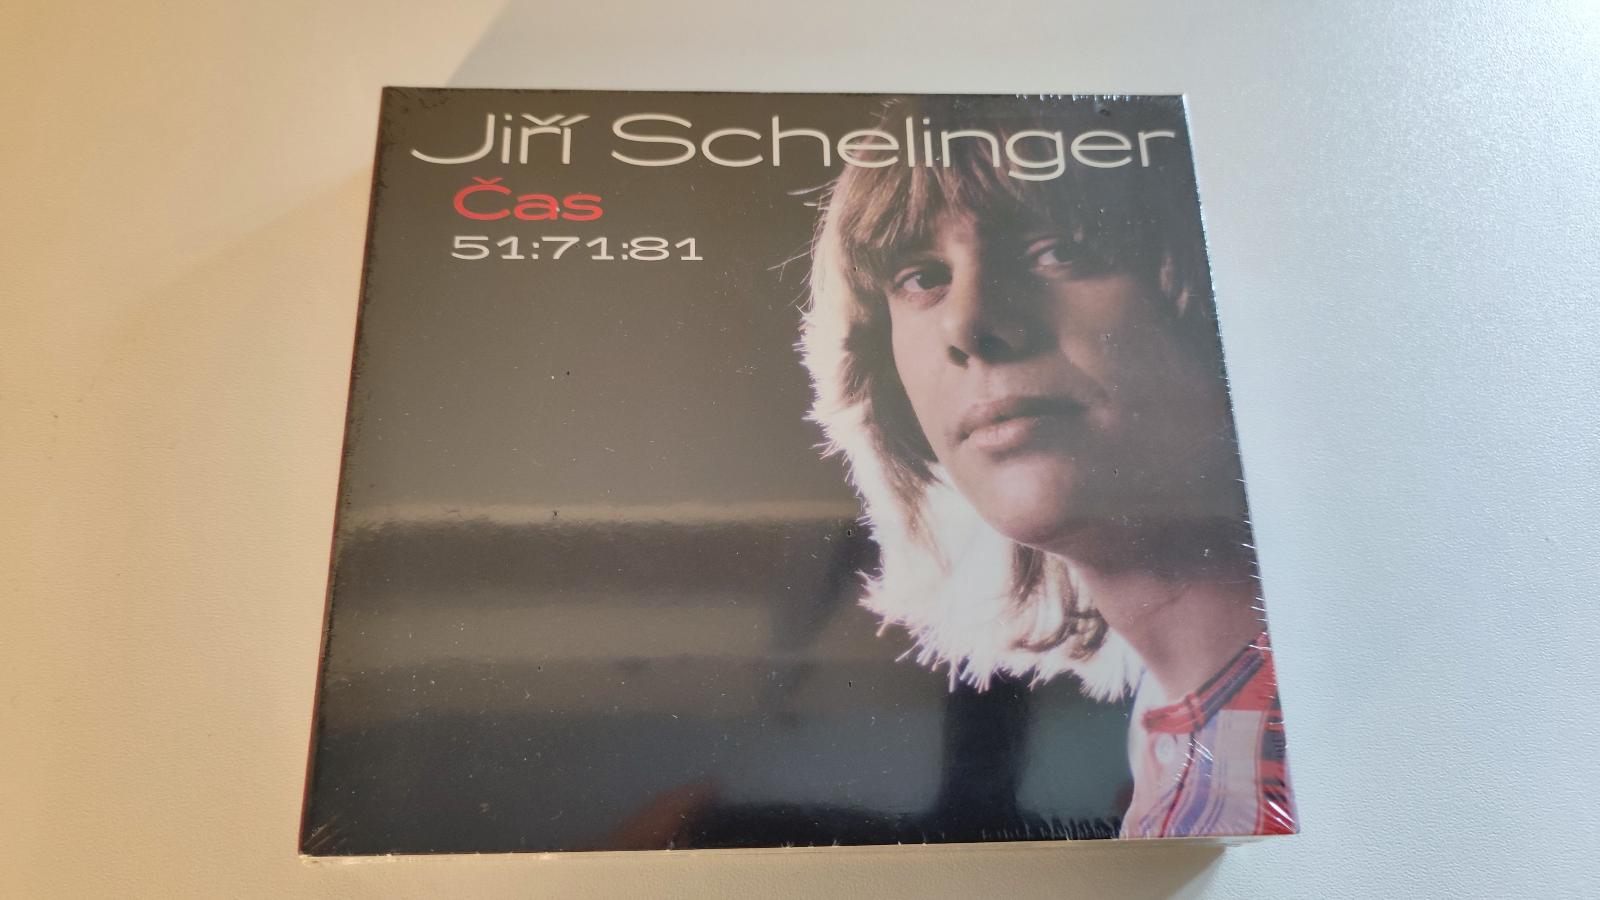 3CD Schelinger Jiří - Čas 51:71:81 - Zlatá kolekcia 3 CD - Hudba na CD